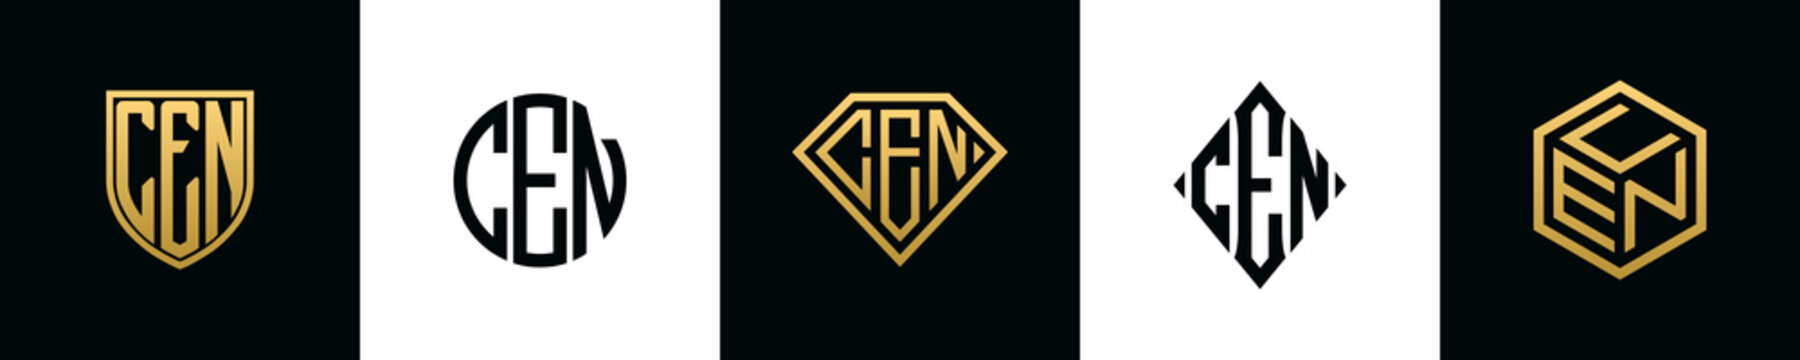 Initial letters CEN logo designs Bundle